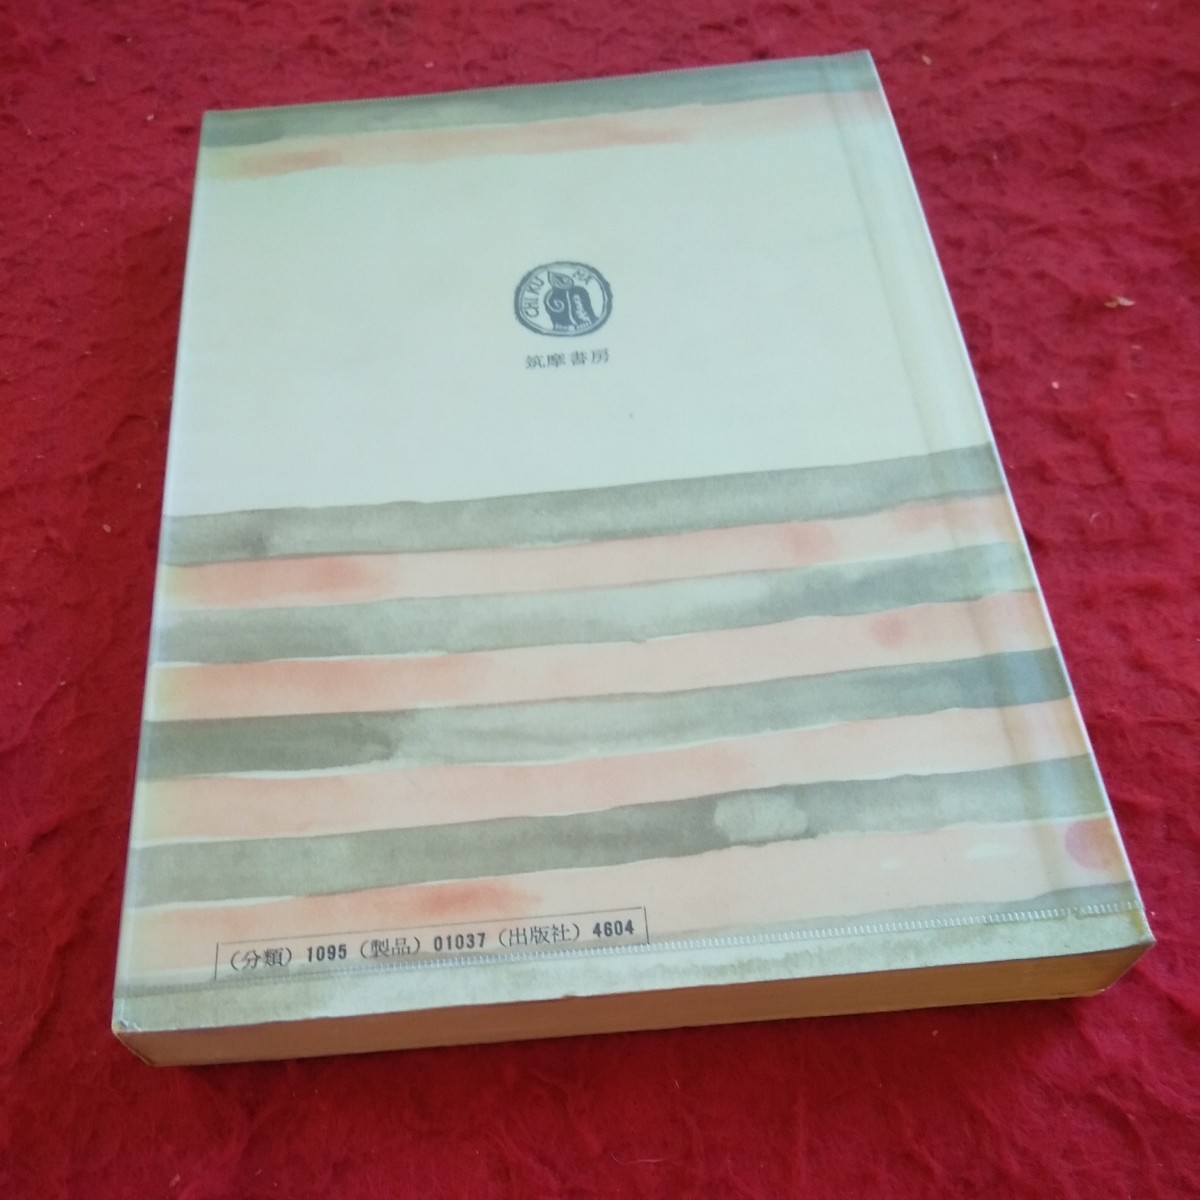 a-300 私の「漱石」と「龍之介」内田百聞 筑摩叢書 1973年発行 漱石山房 蓄音器 思い出 「つはぶぎの花」より など※2_傷、汚れあり